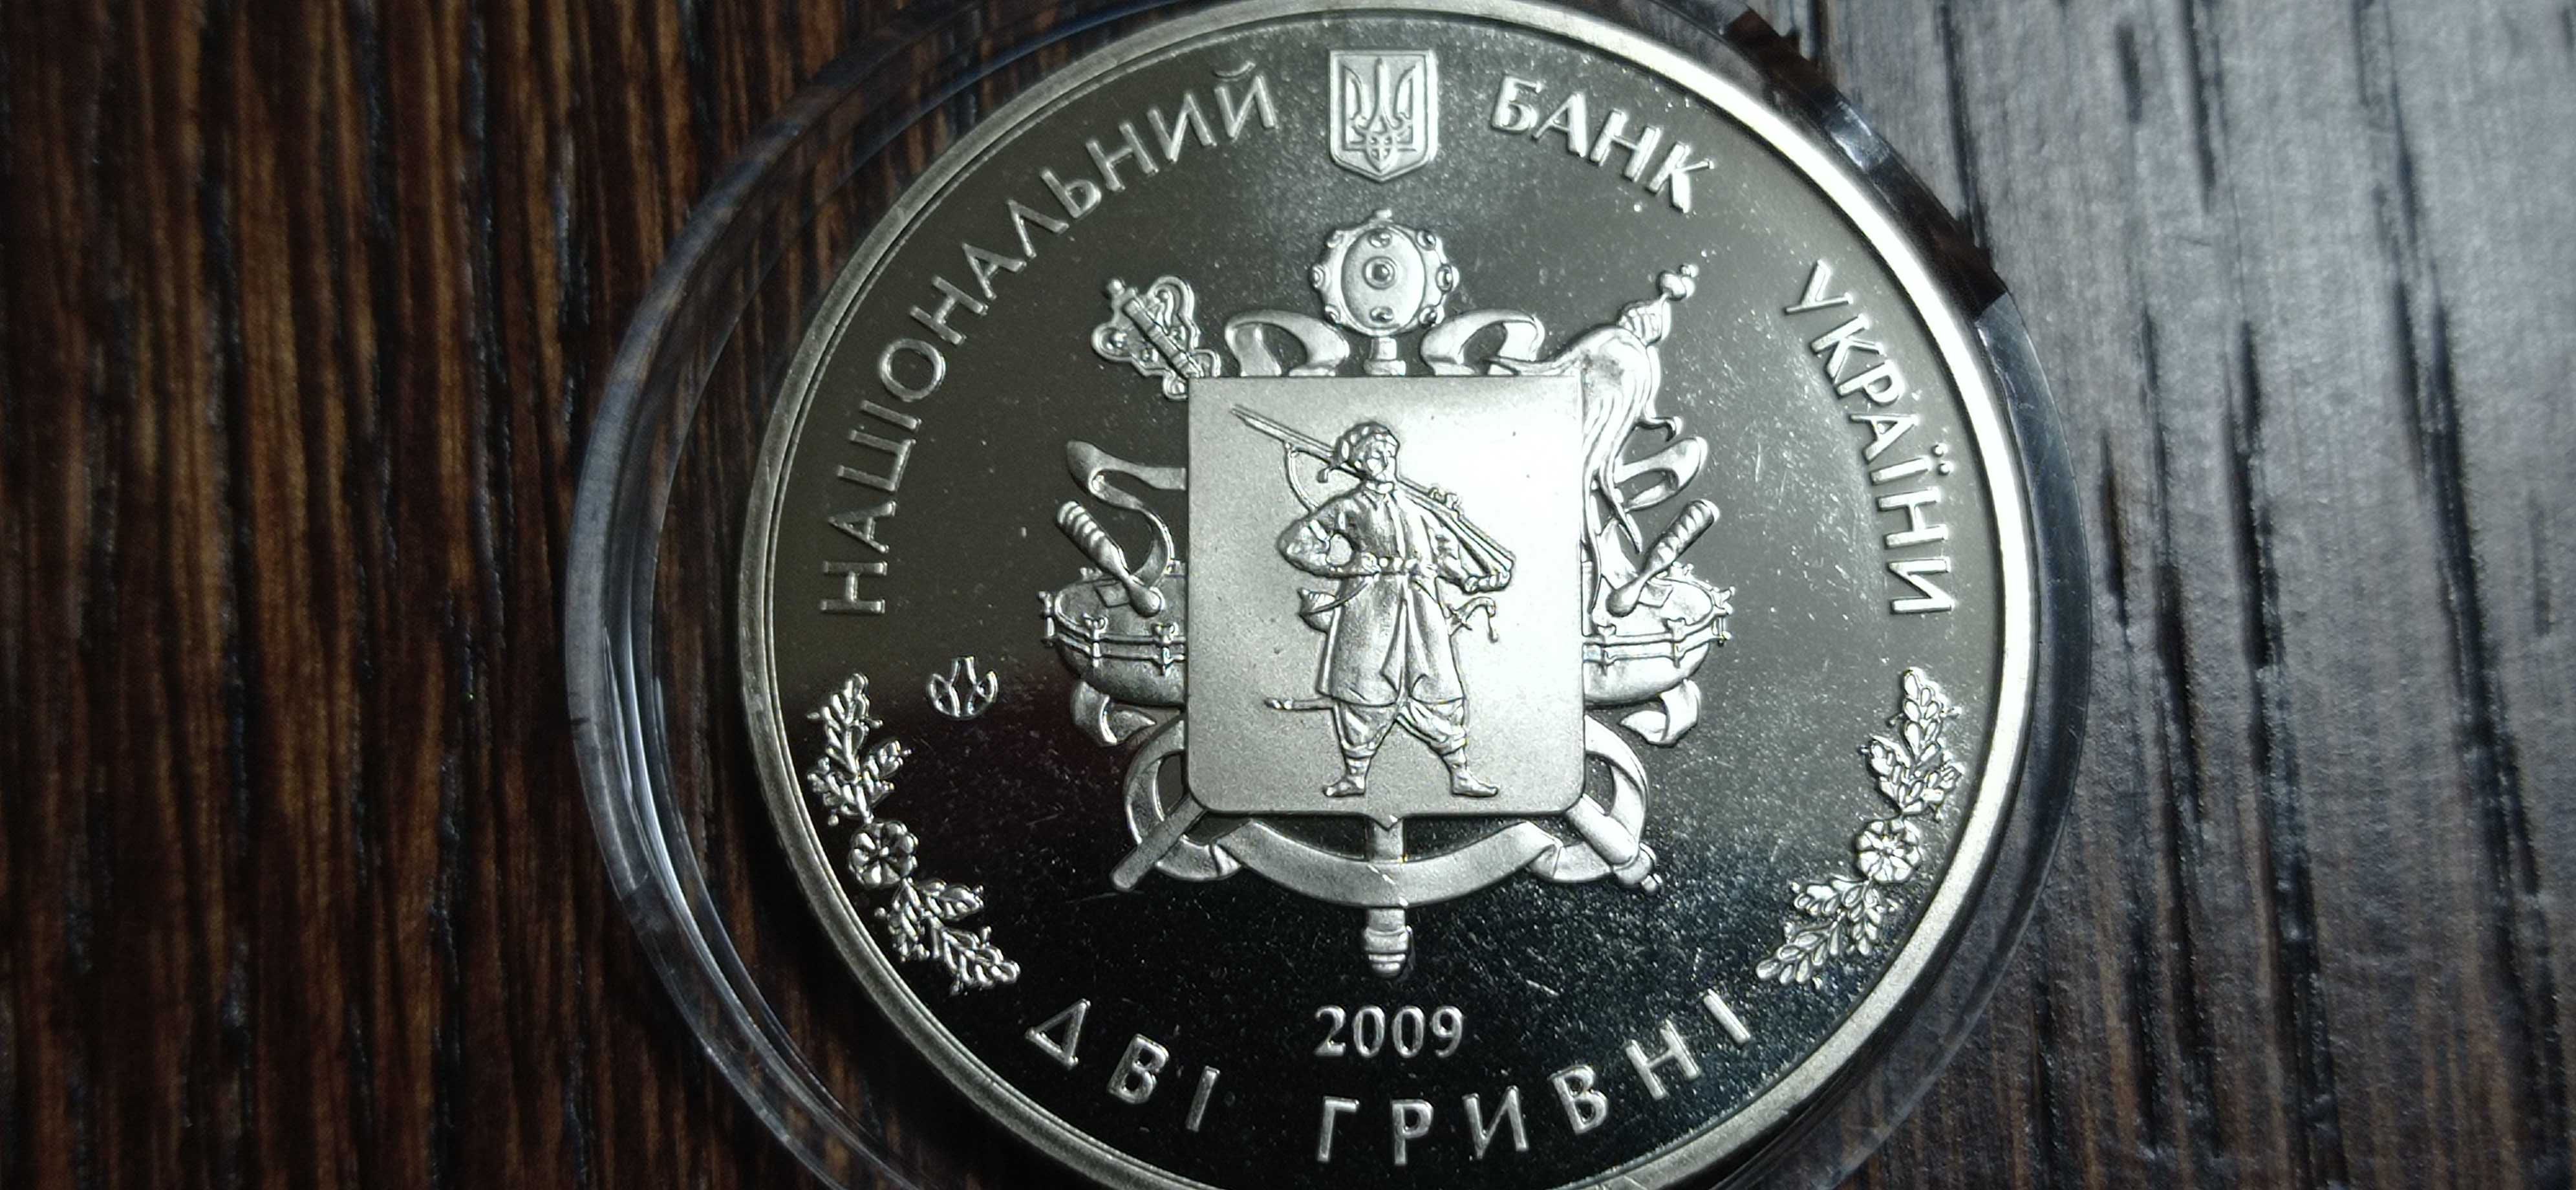 Юбилейная монета две гривны 2009 г. *Запорожская область-70 лет*